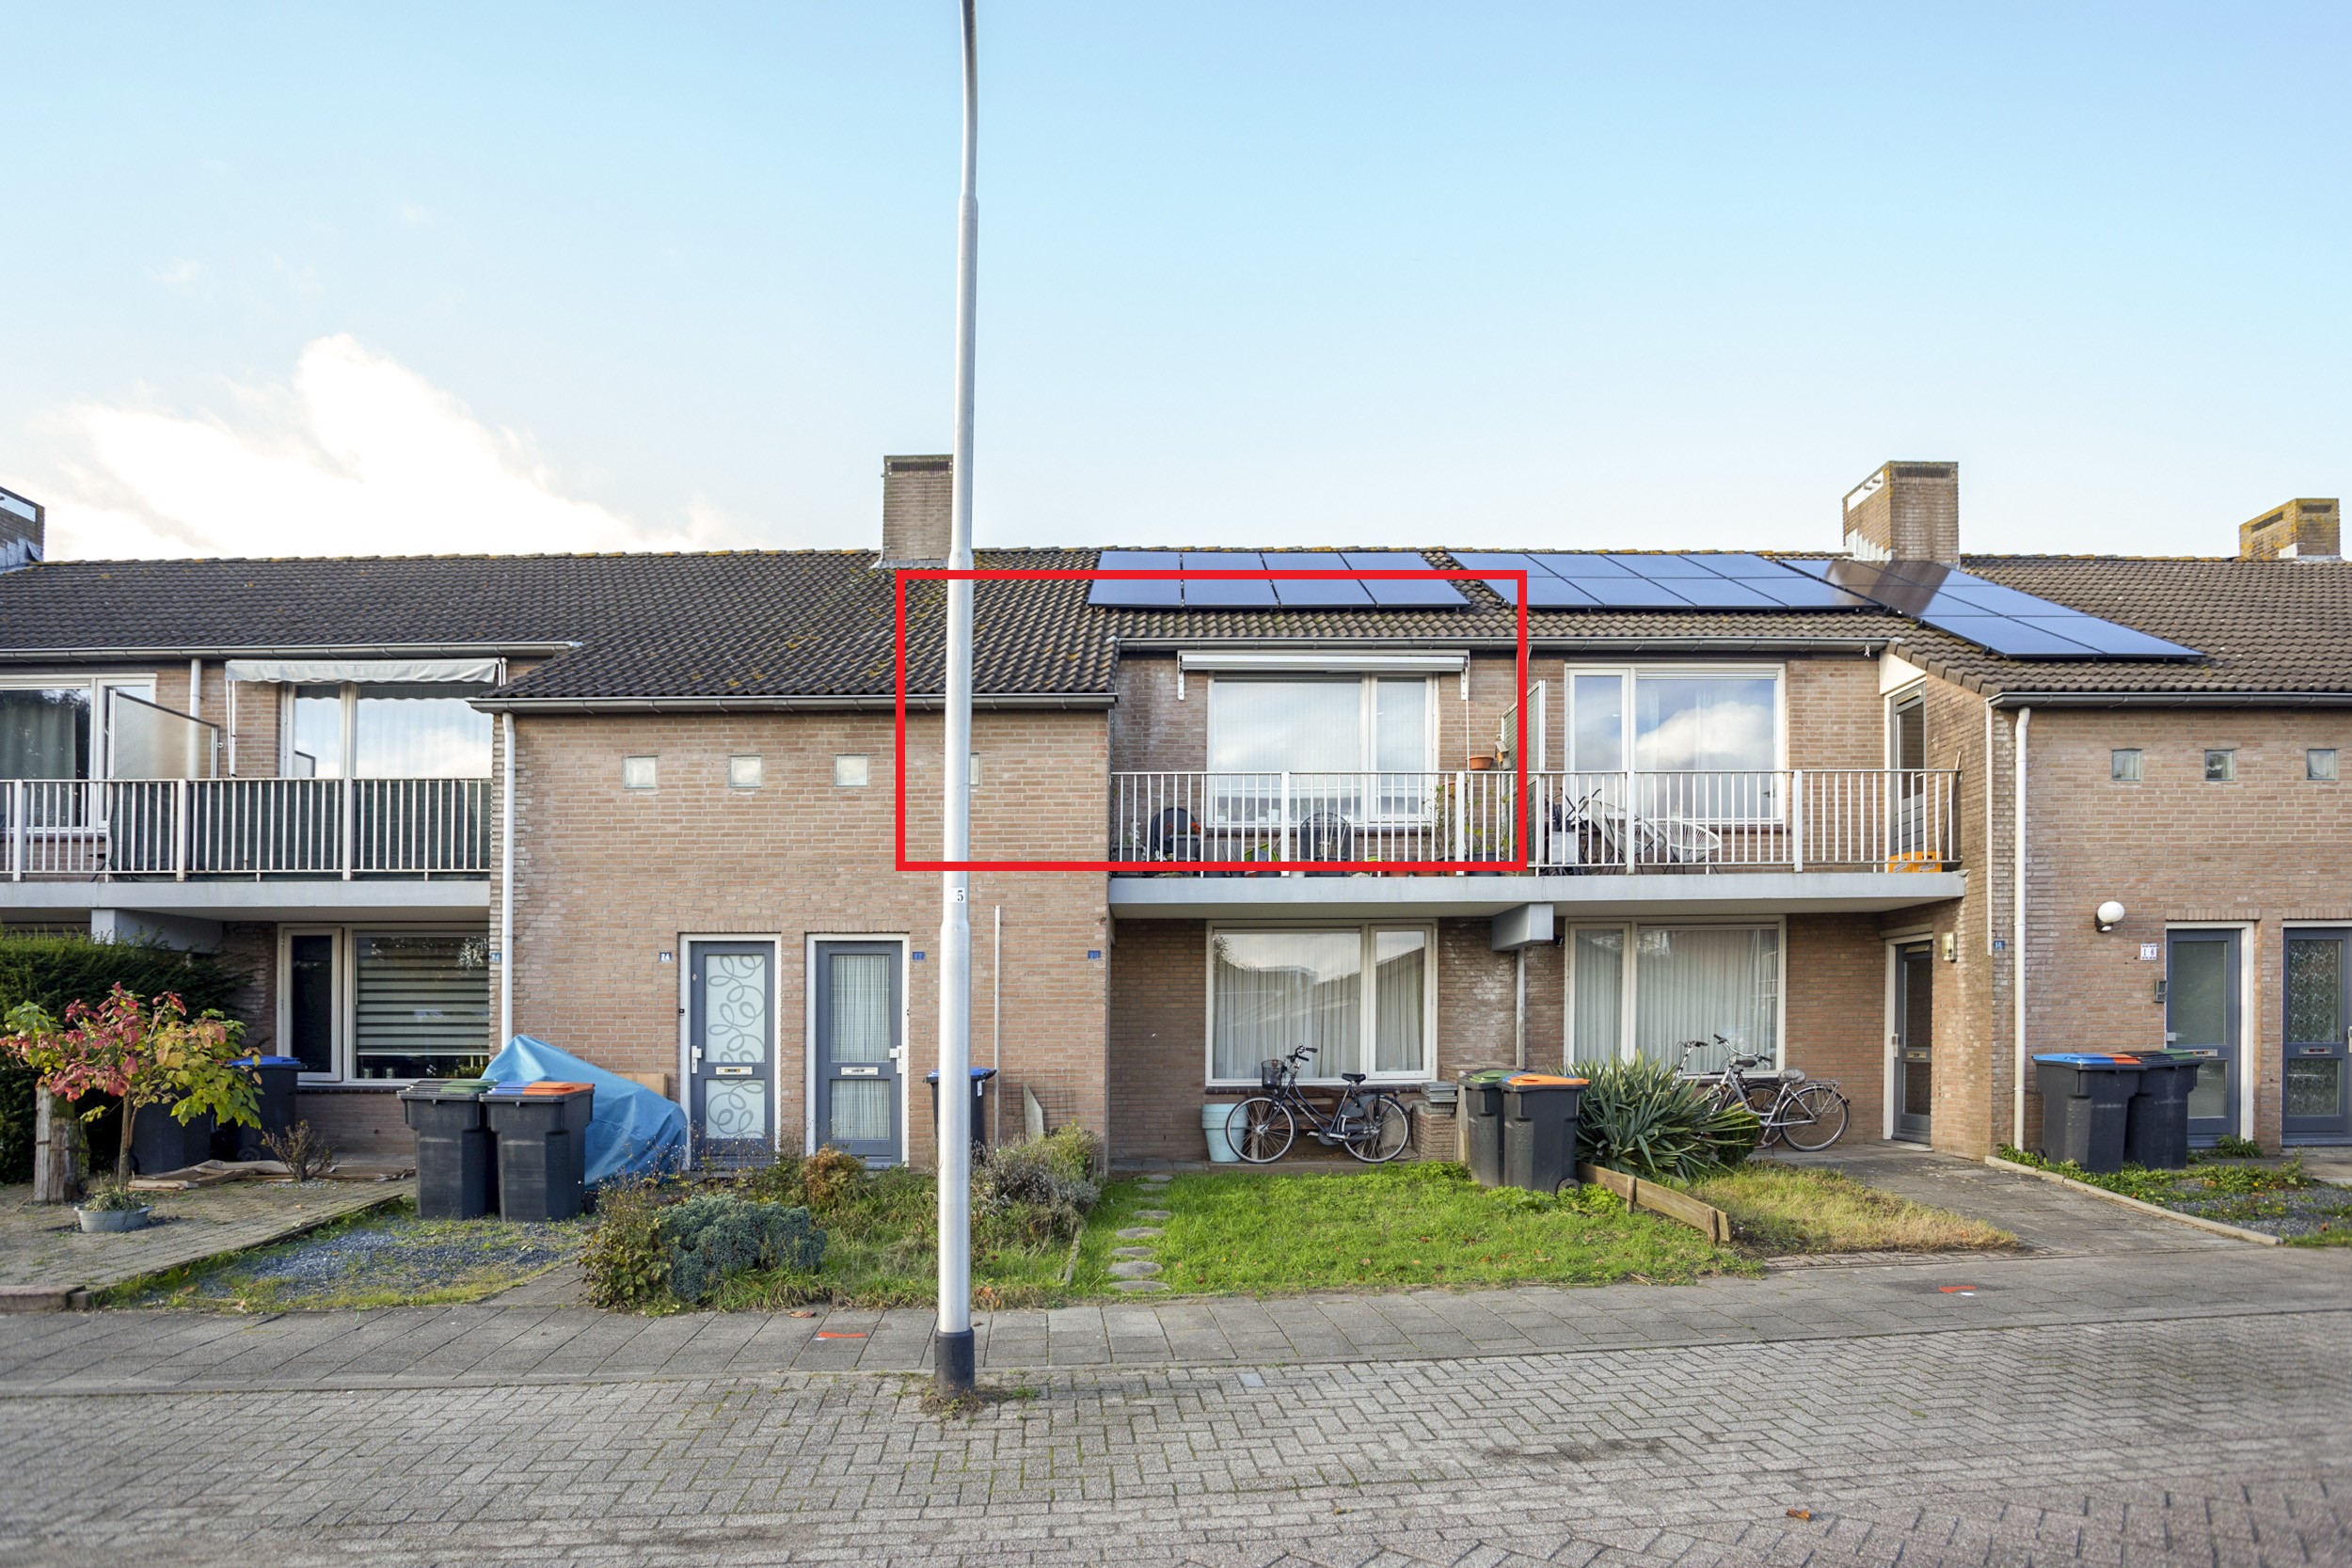 Goudsbloem 22, 5071 EZ Udenhout, Nederland